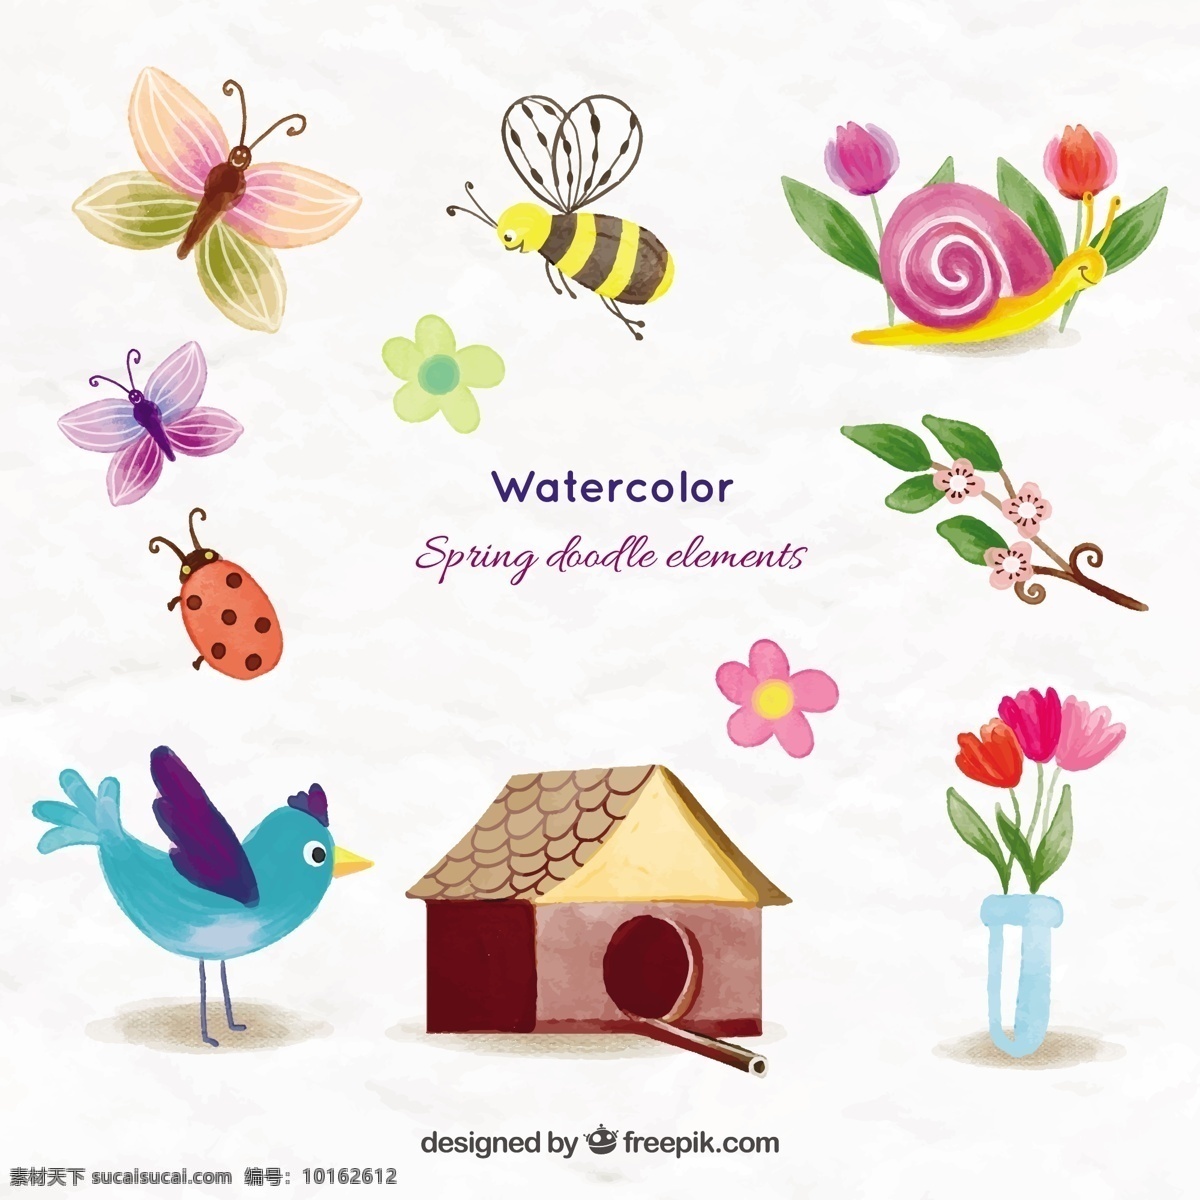 水彩画 可爱 动物 春天 东西 花 水彩 房子 鸟 蝴蝶 手 自然 可爱的蜜蜂 植物 水彩花卉 瓢虫 可爱的花朵 白色